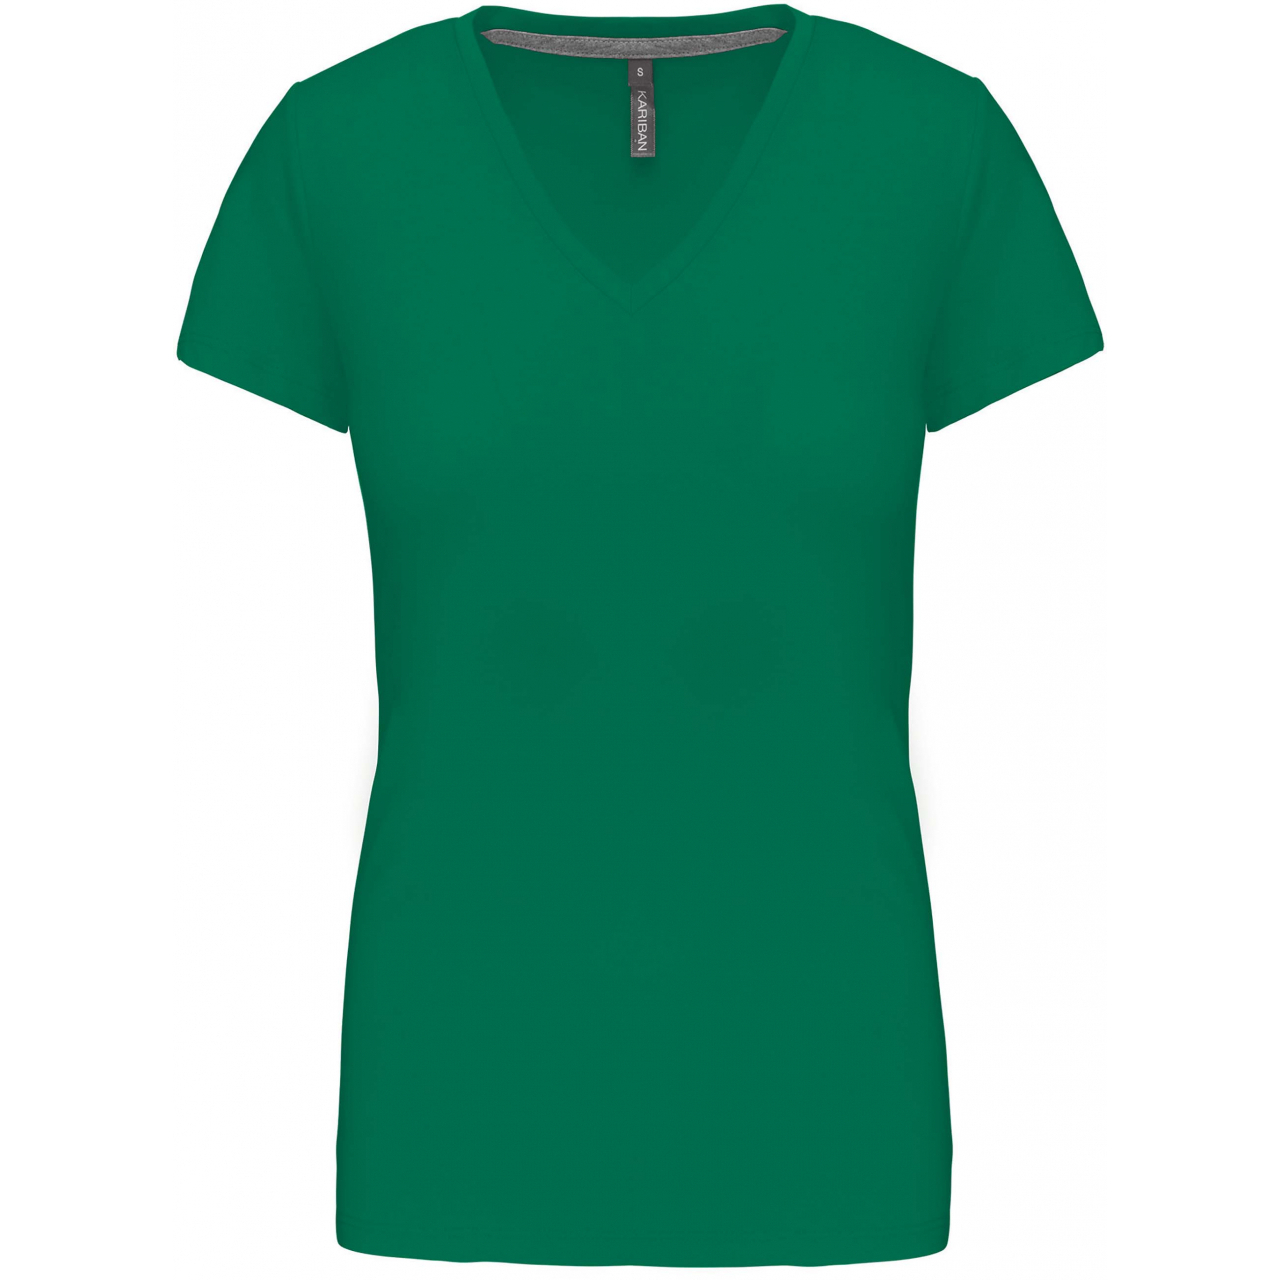 Dámské tričko Kariban V-neck s krátkým rukávem - zelené, M